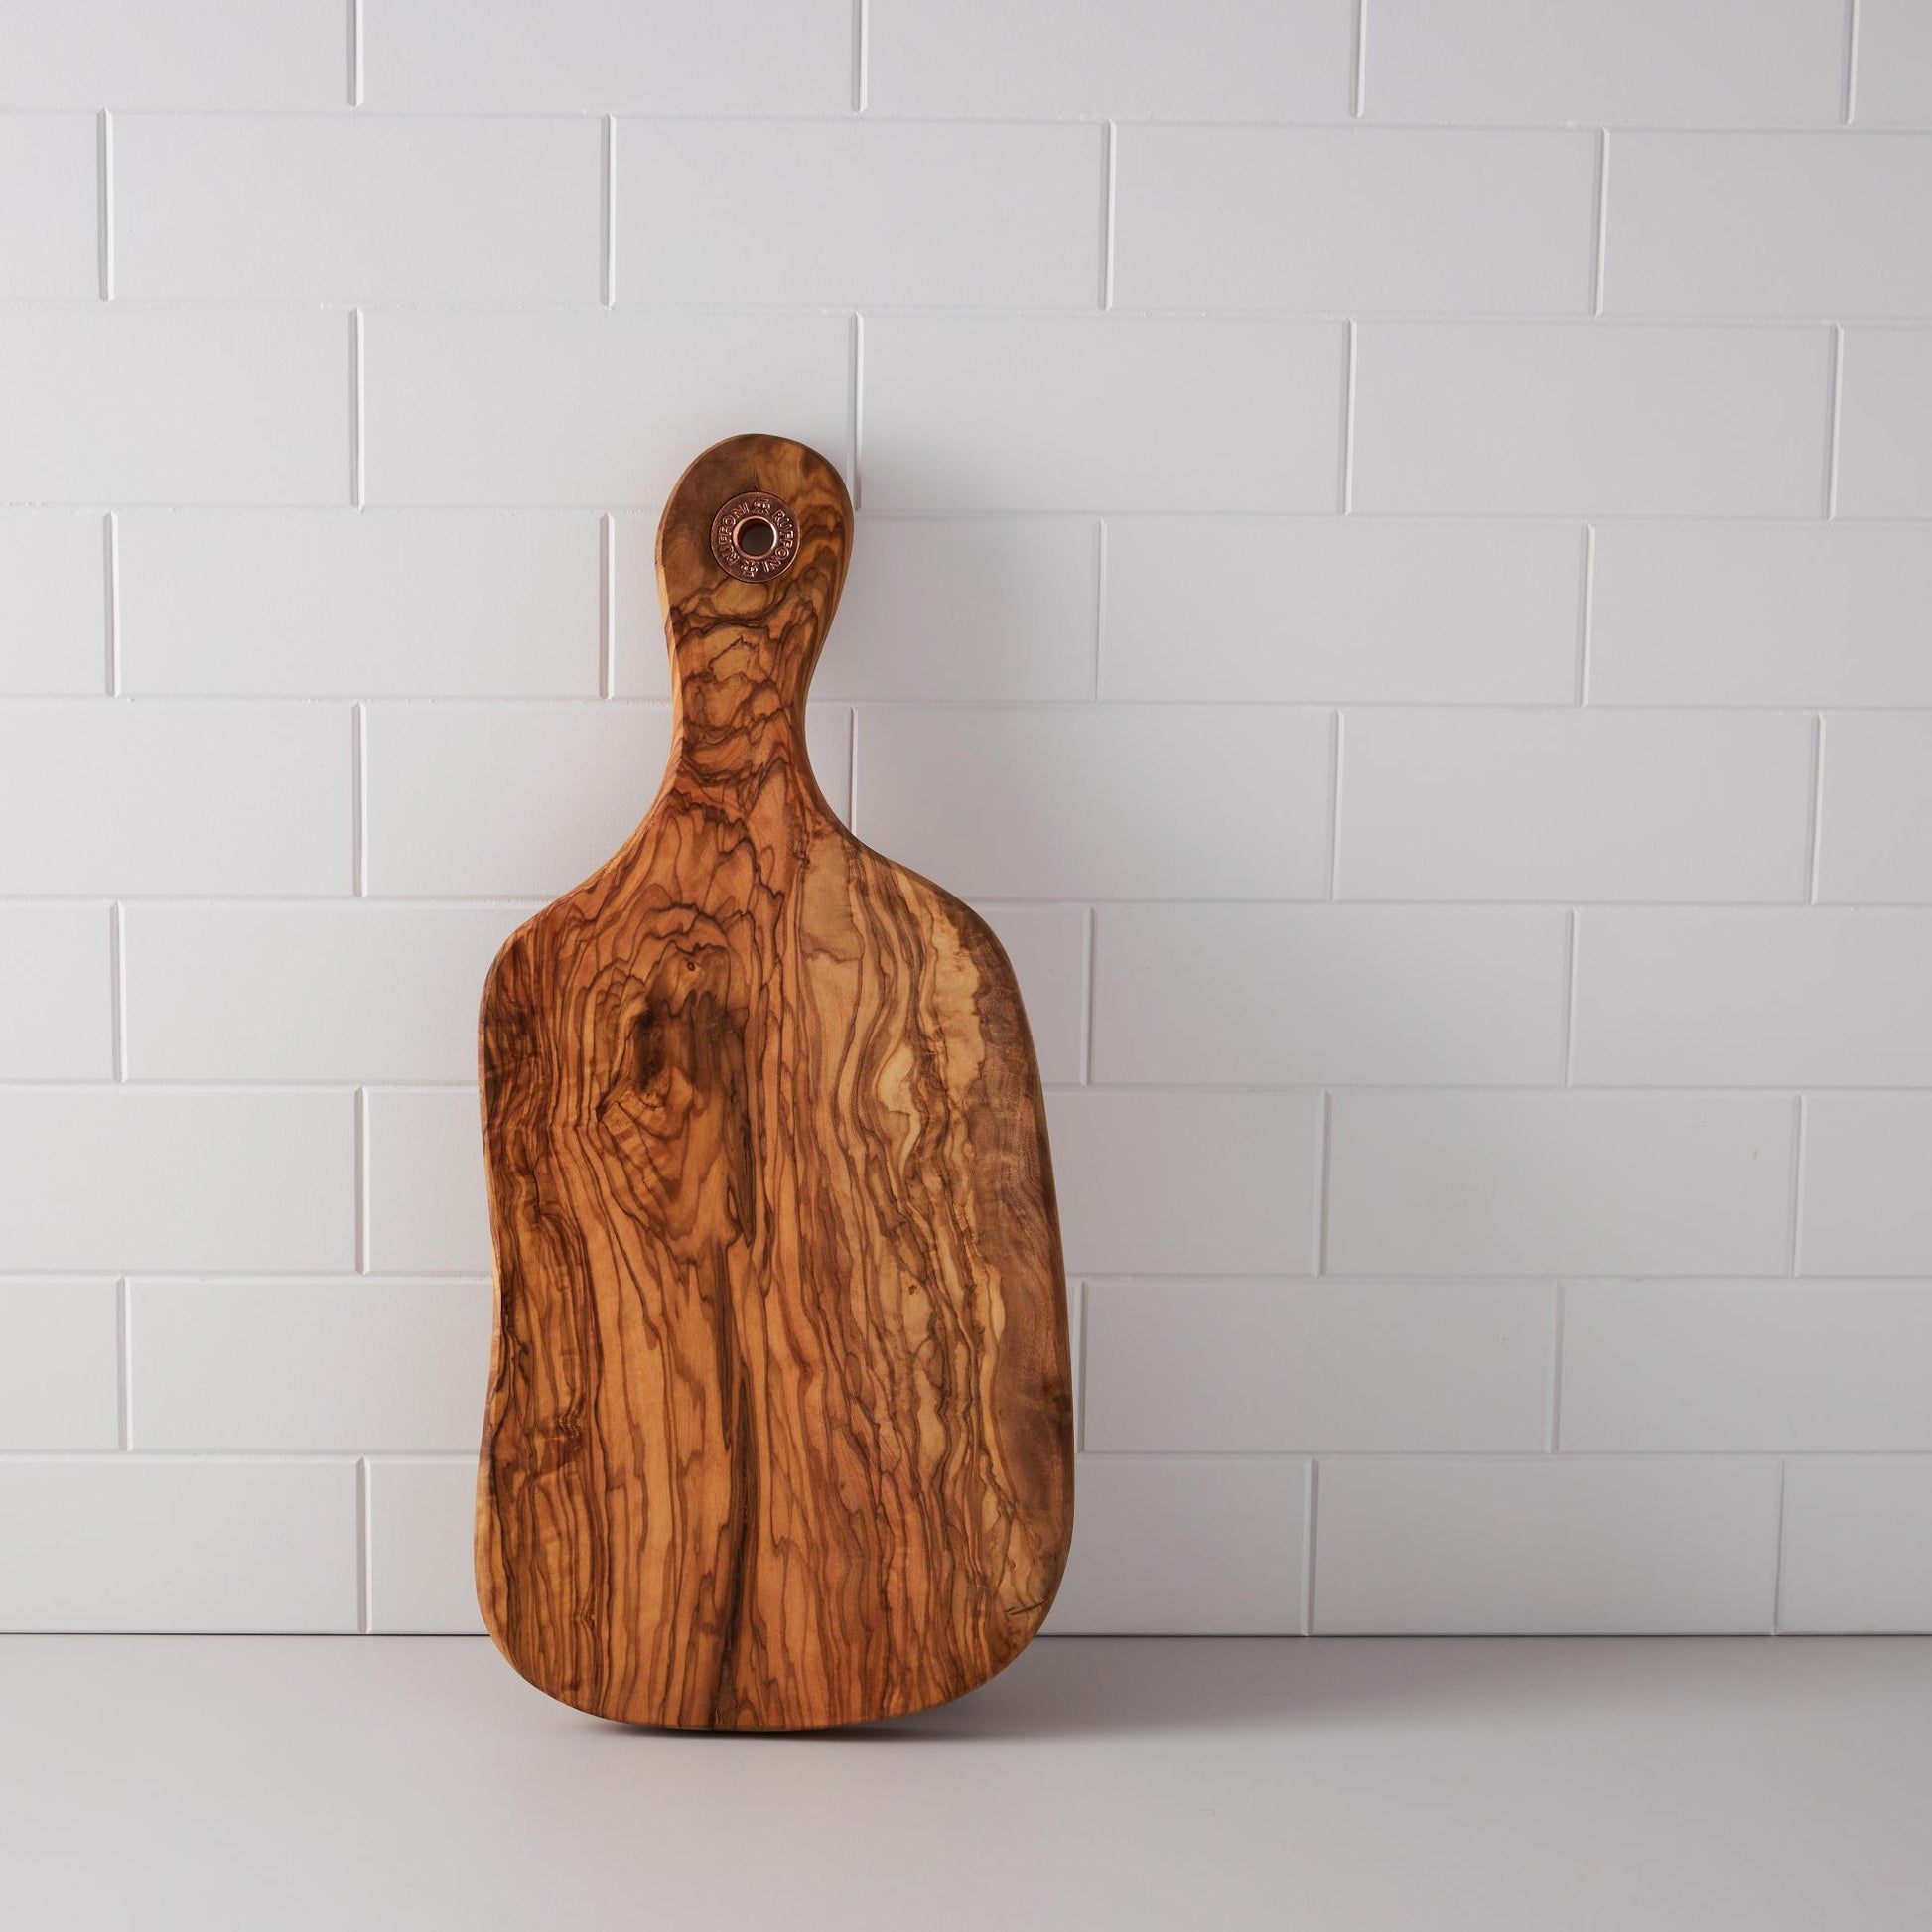 15" Medium olivewood cutting board by Ruffoni